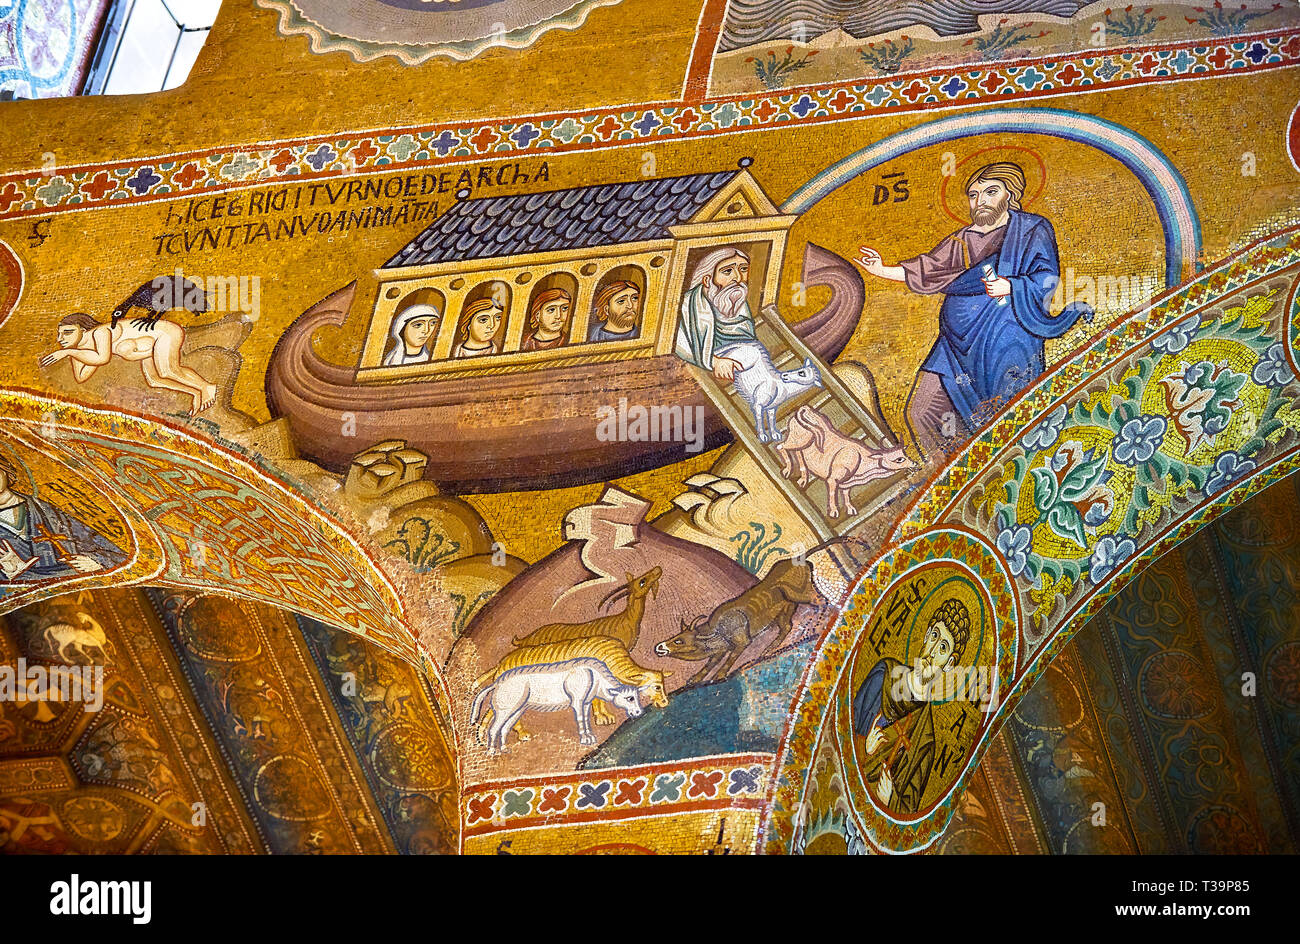 Medievale in stile bizantino mosaici del racconto biblico dell'arca di Noè Cappella Palatina, Cappella Palatina, Palermo, Italia Foto Stock